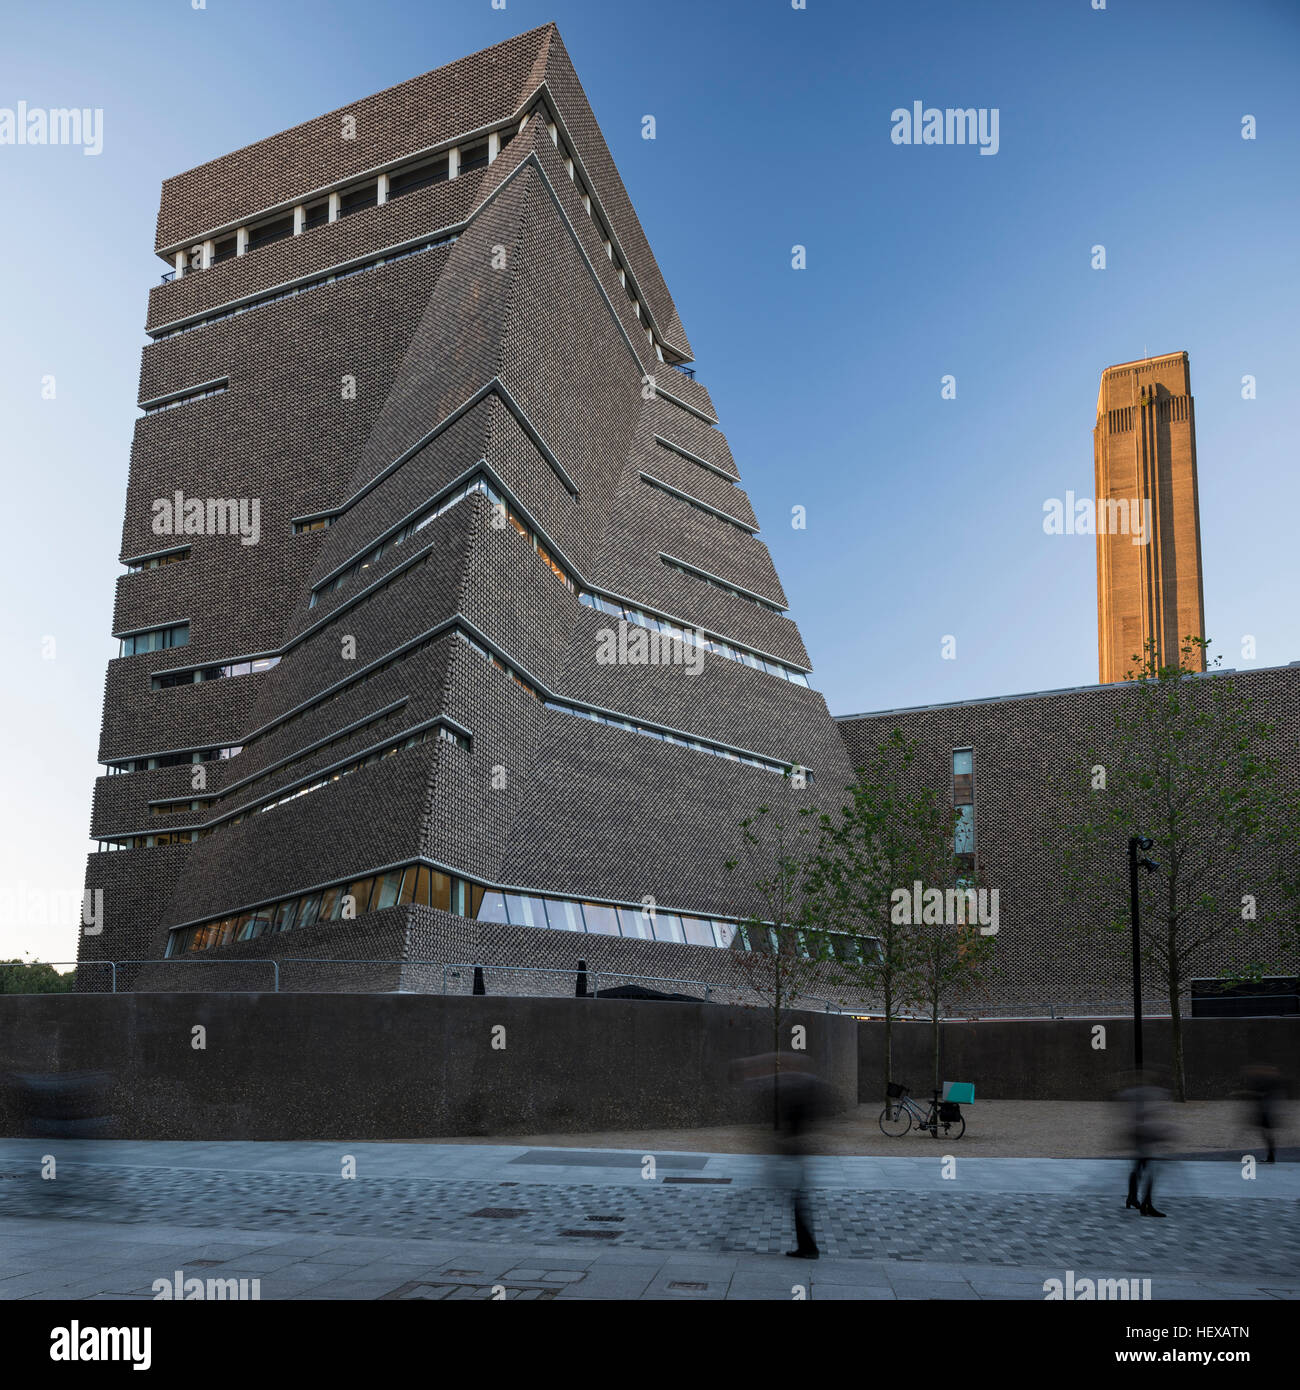 Vue extérieure de la maison de l'interrupteur, Tate Modern, London, UK Banque D'Images